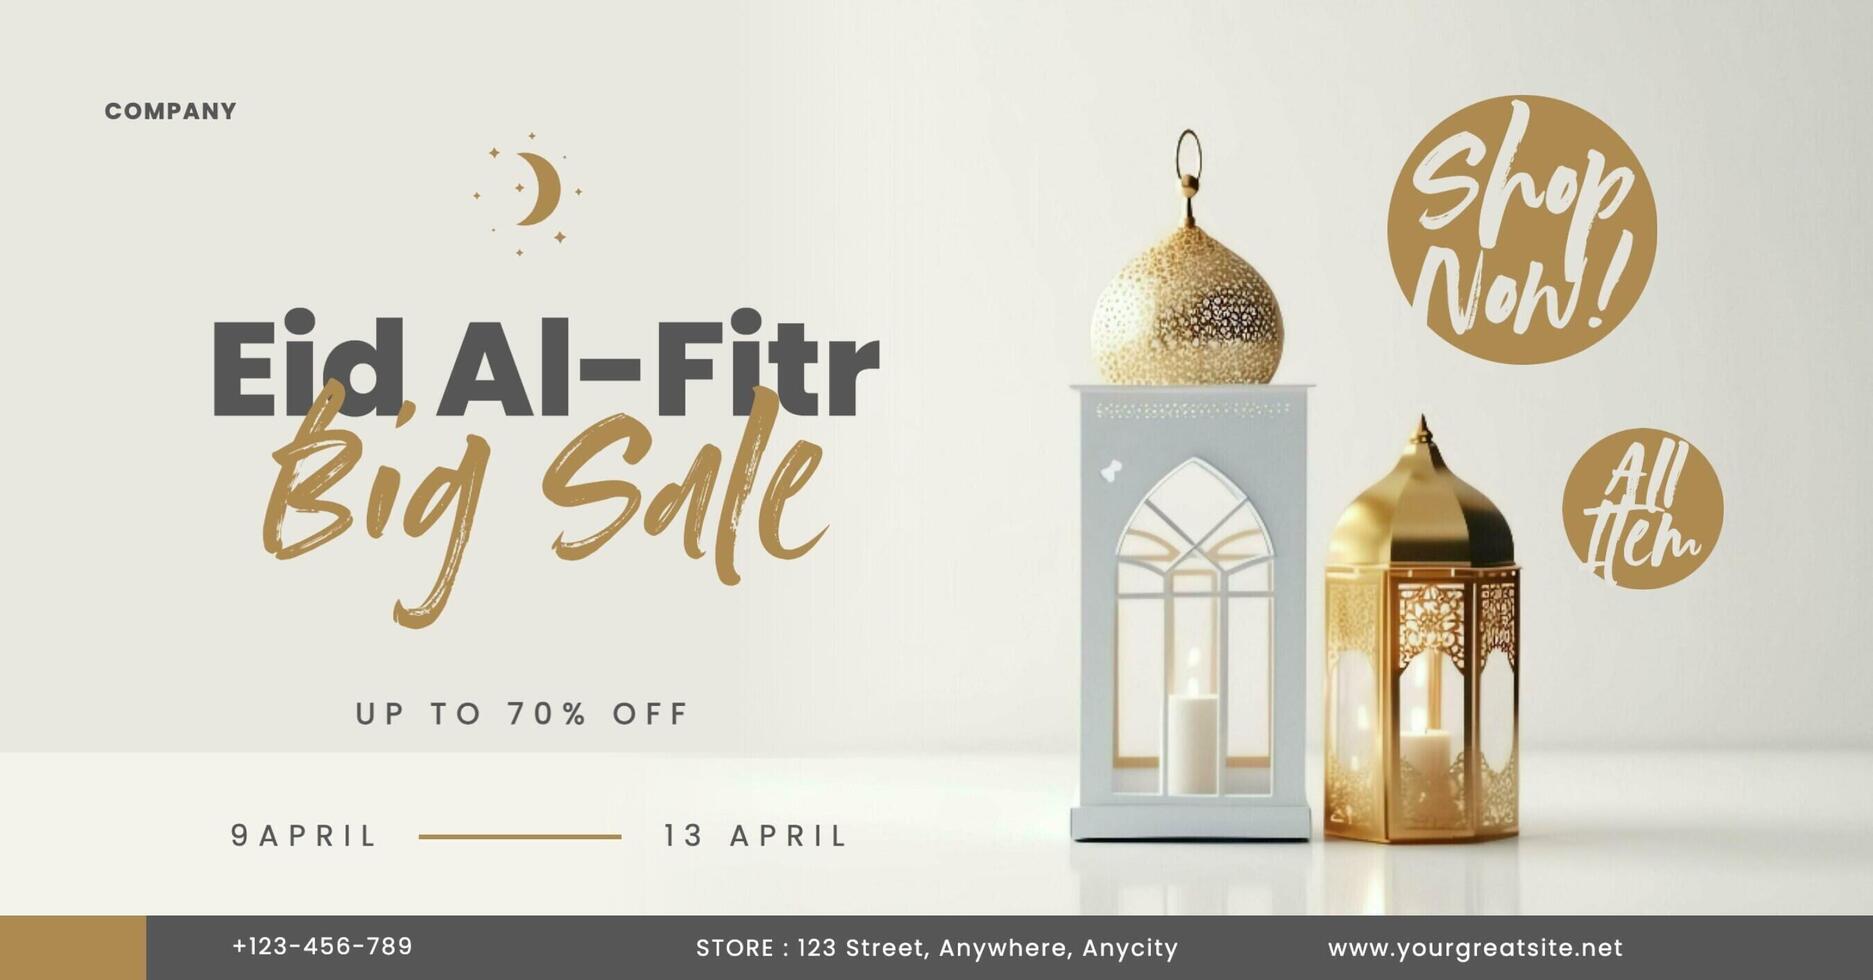 Eid Al-Fitr Big Sale Facebook Ad template